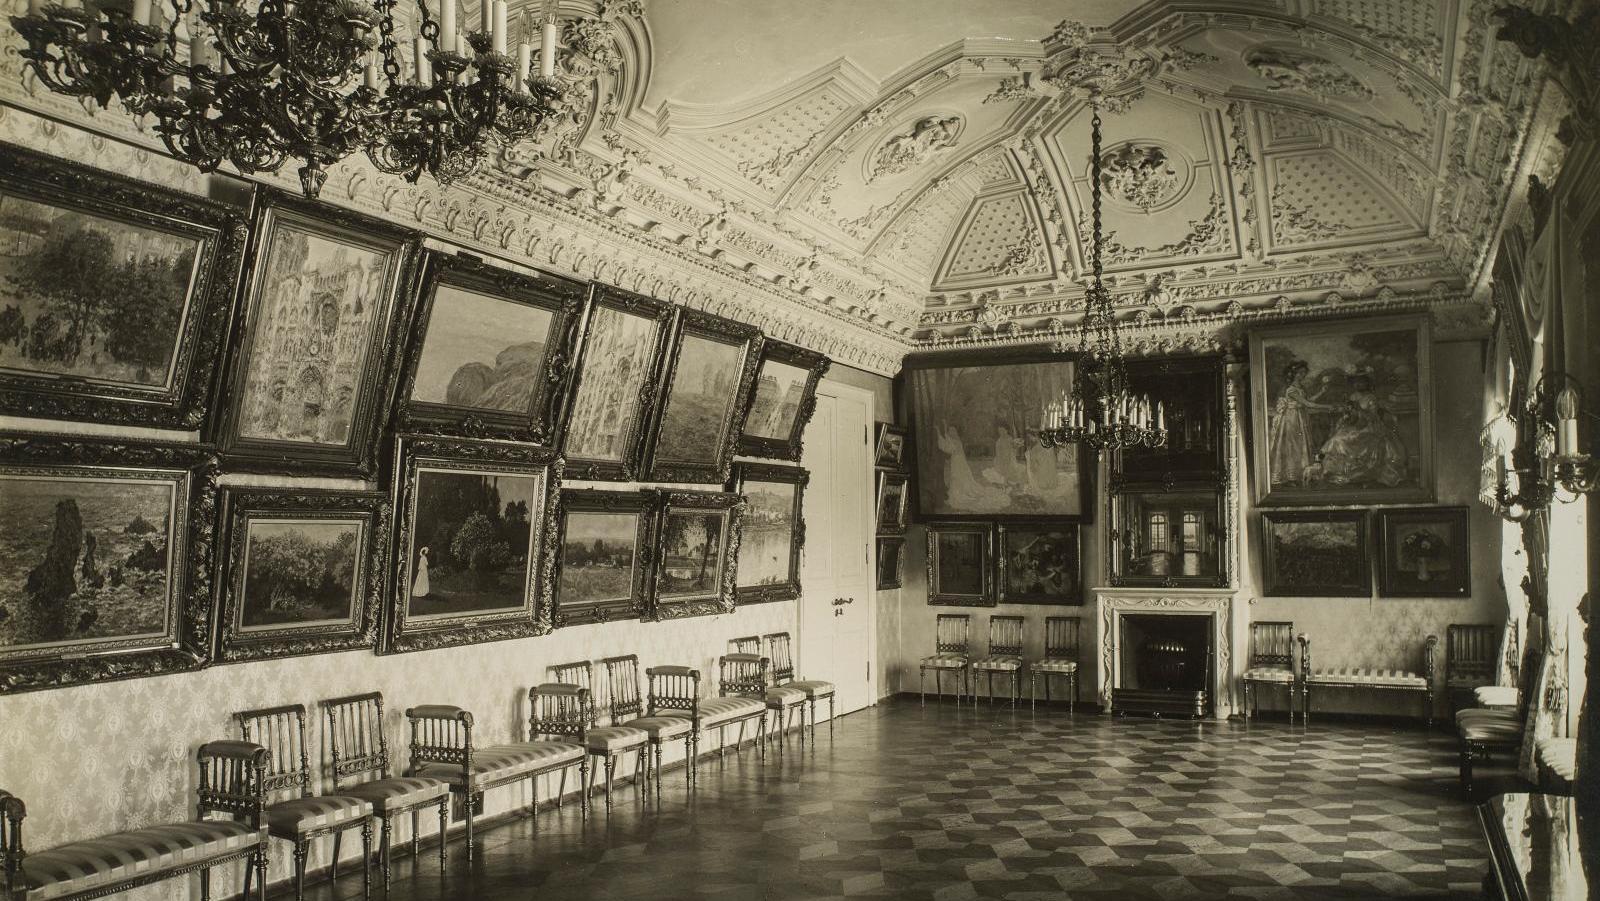 Le salon de musique, la salle des Monet et des impressionnistes au Palais Troubetskoy,... Coup(s) de Maître(s)